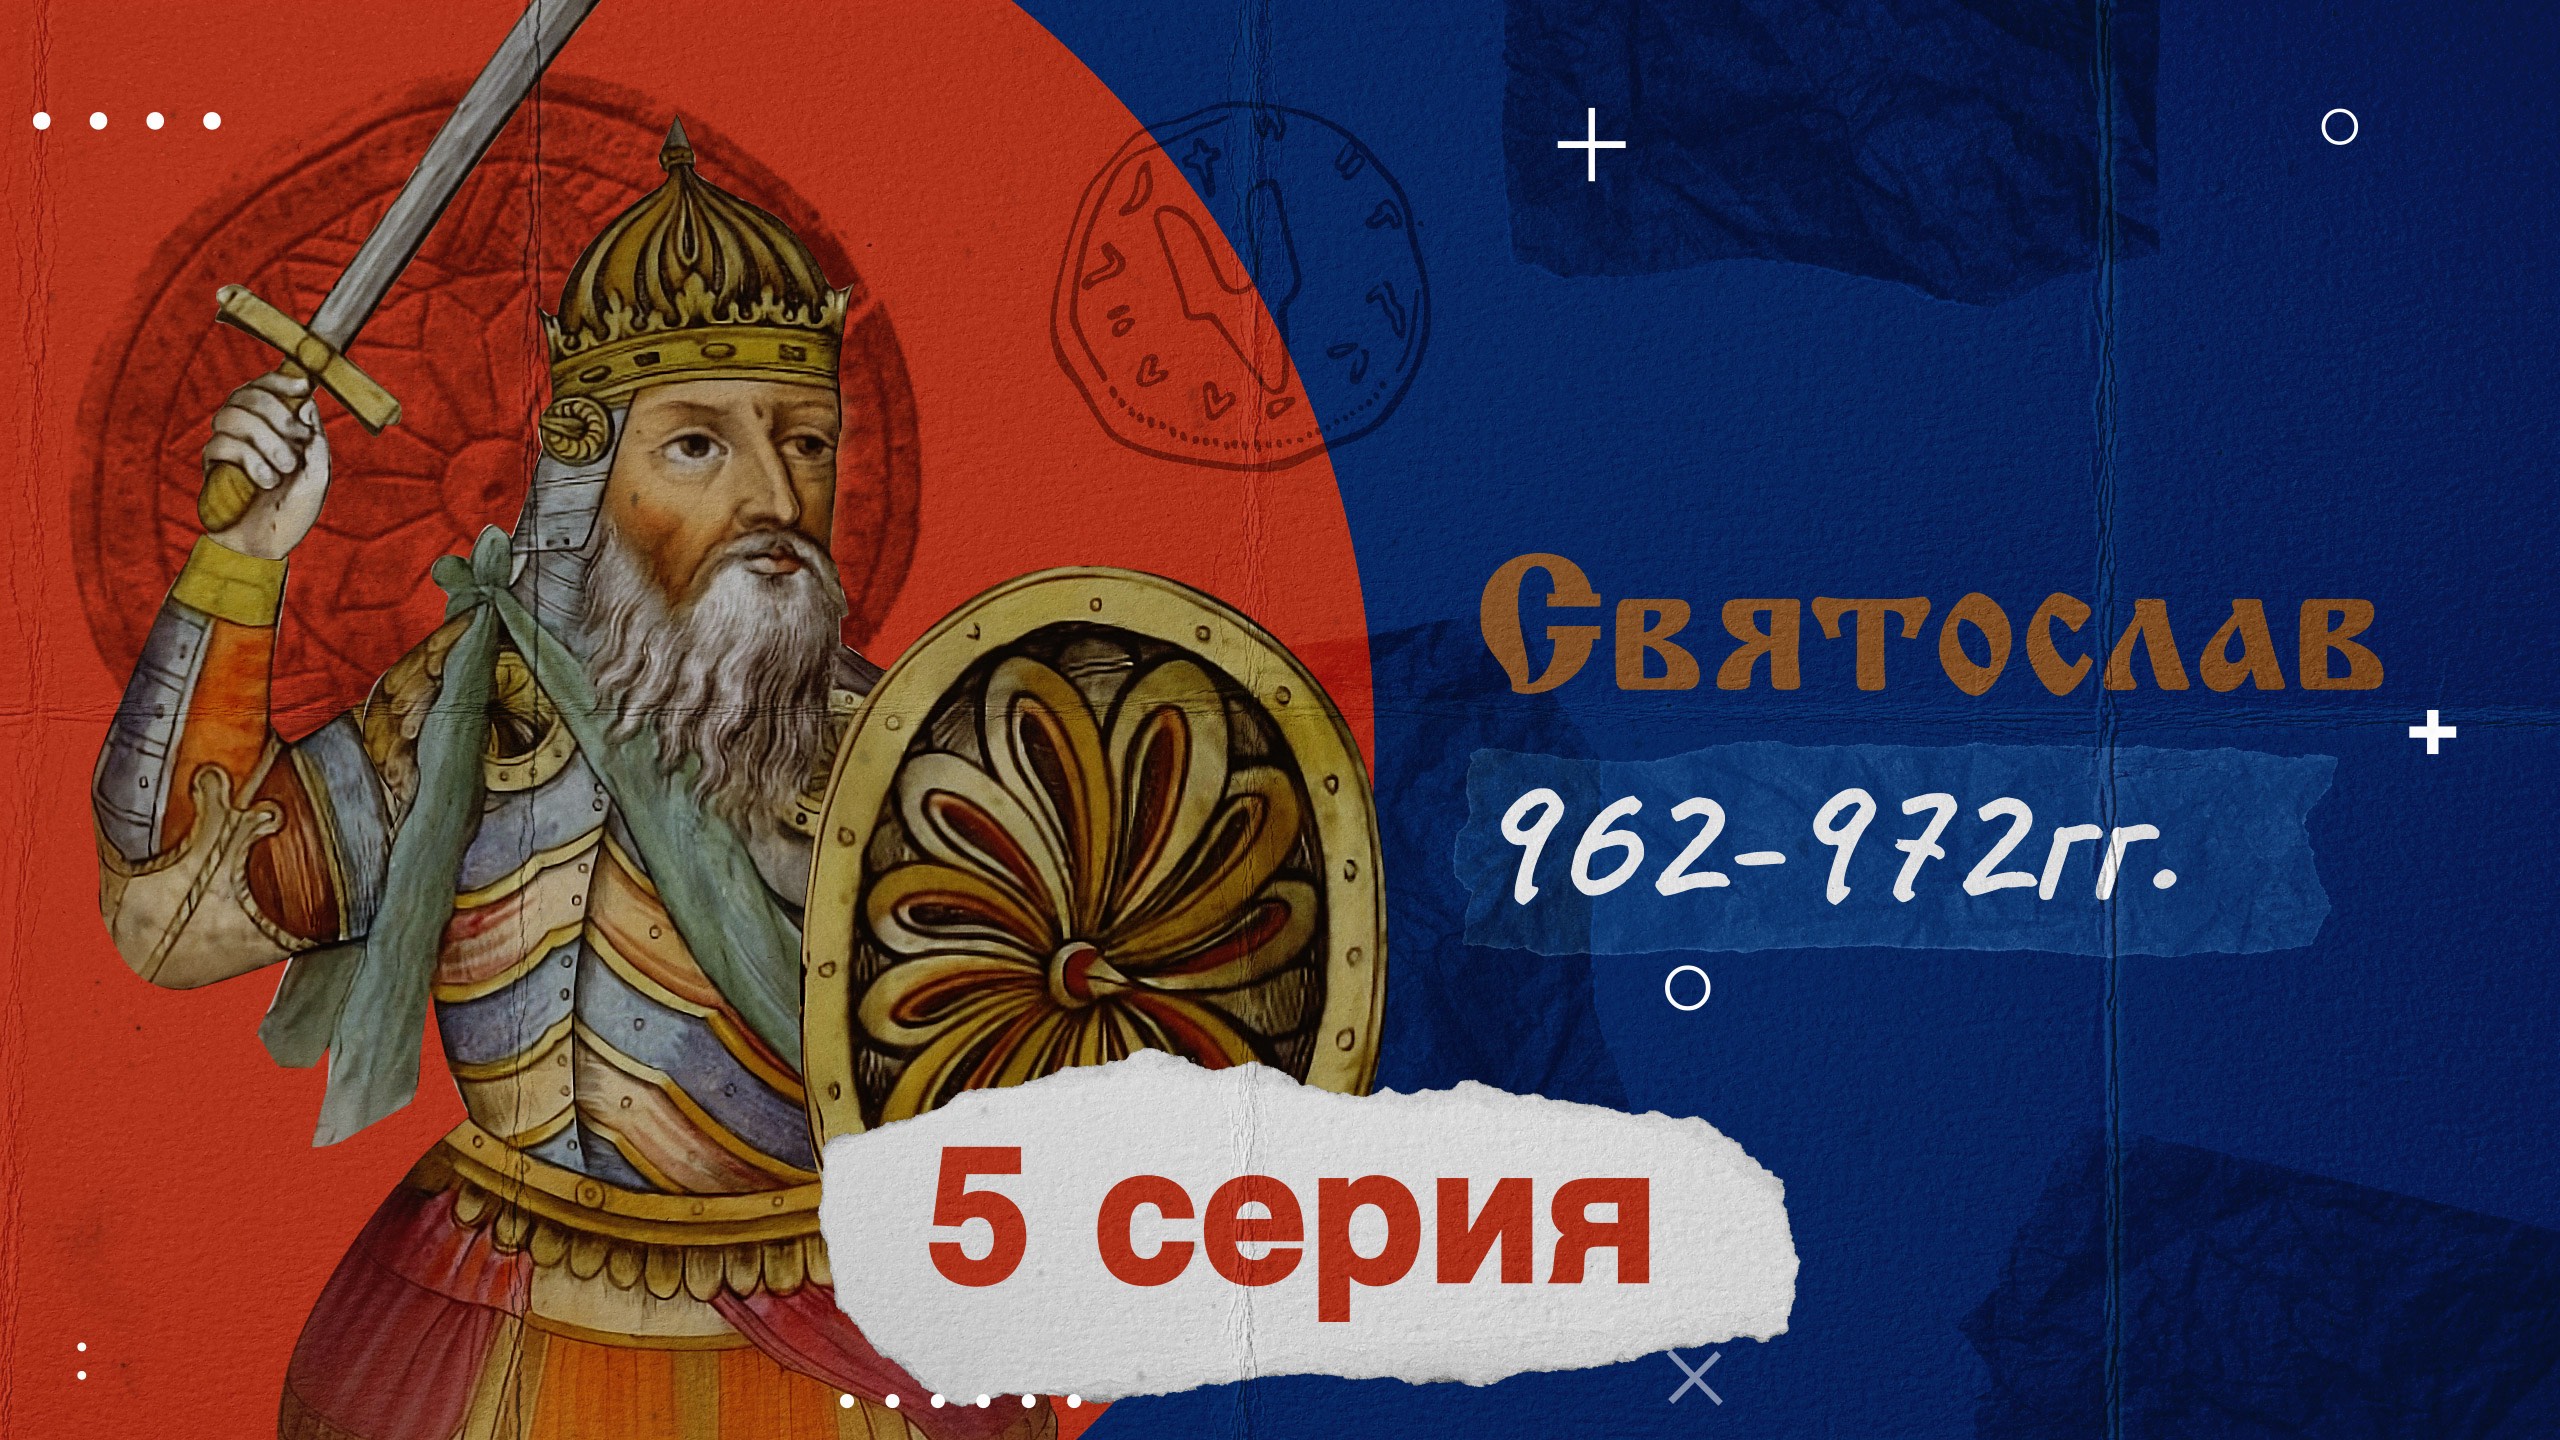 Князь Святослав - 962-972г. История России